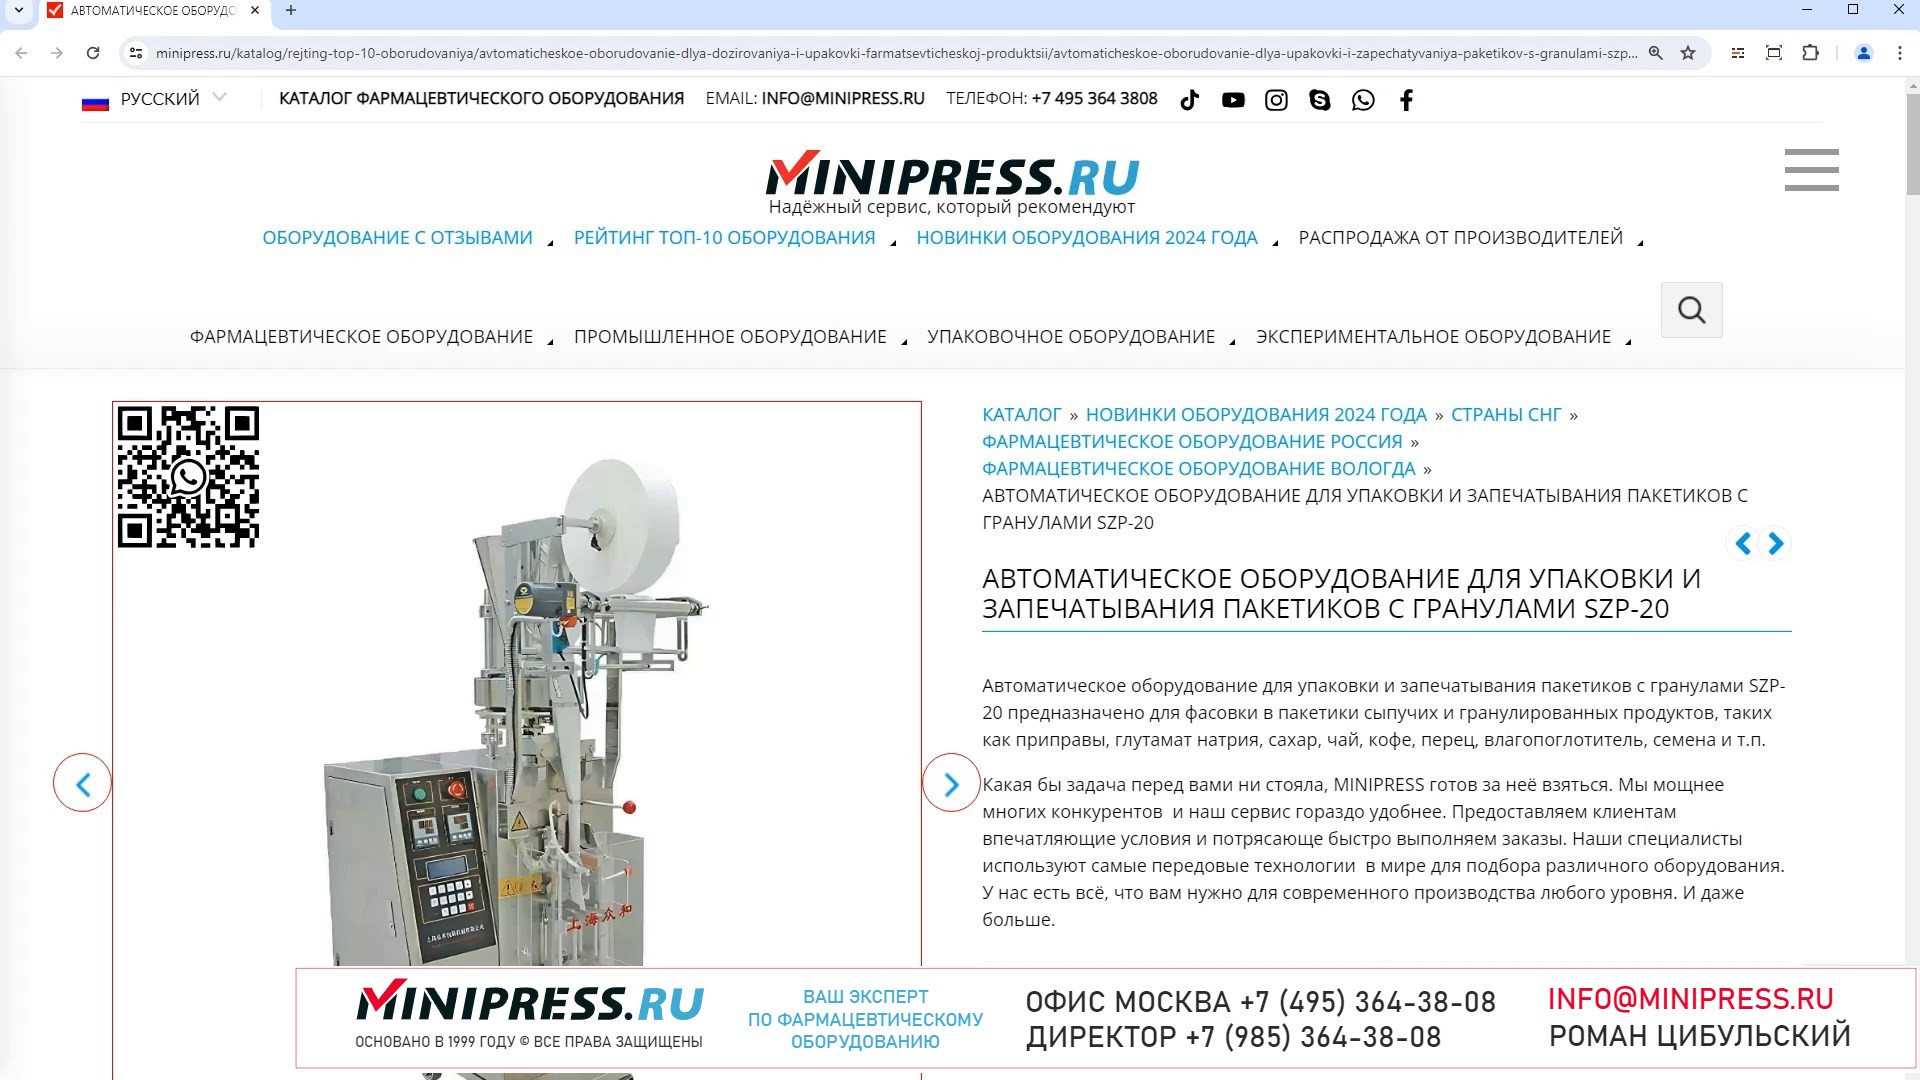 Minipress.ru Автоматическое оборудование для упаковки и запечатывания пакетиков с гранулами SZP-20